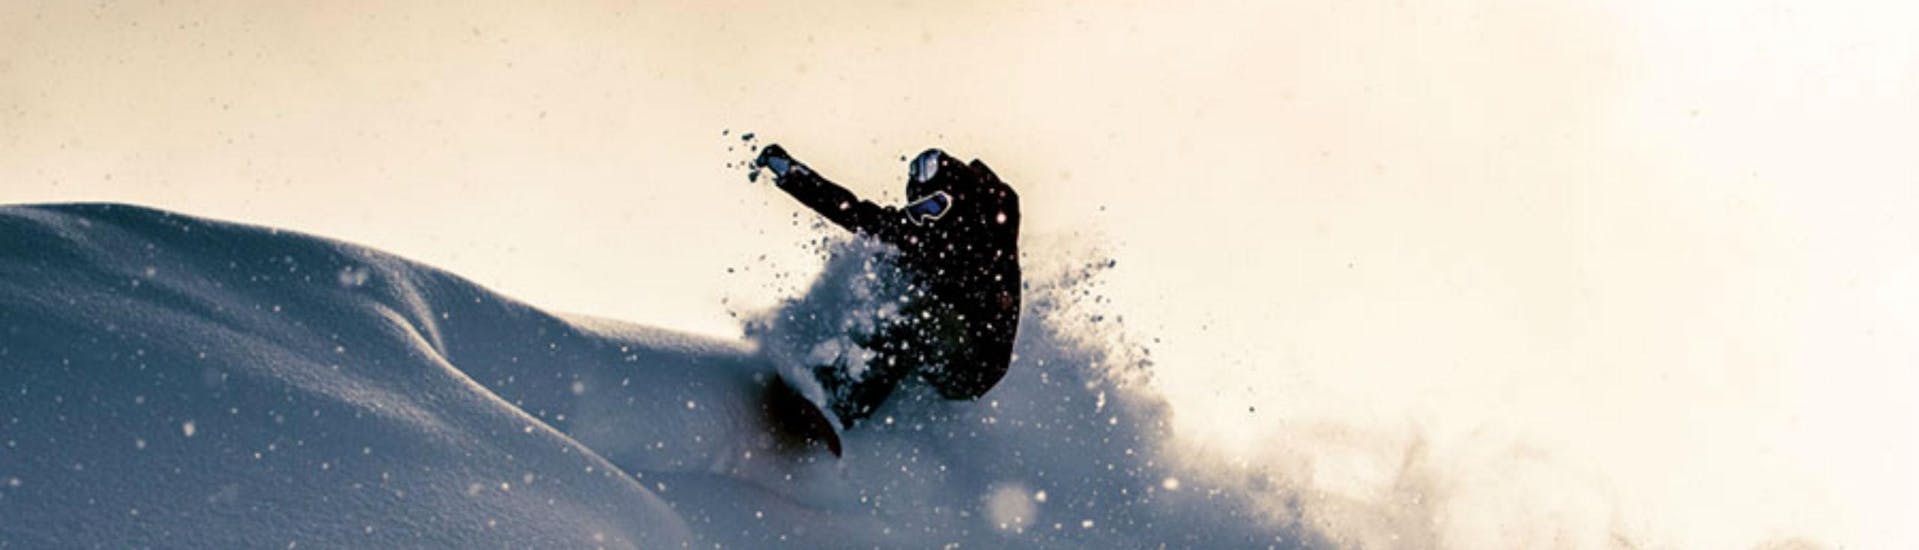 Ein Snowboardlehrer von Board.at mach spektakuläre Freestyle Tricks im Tiefschnee,